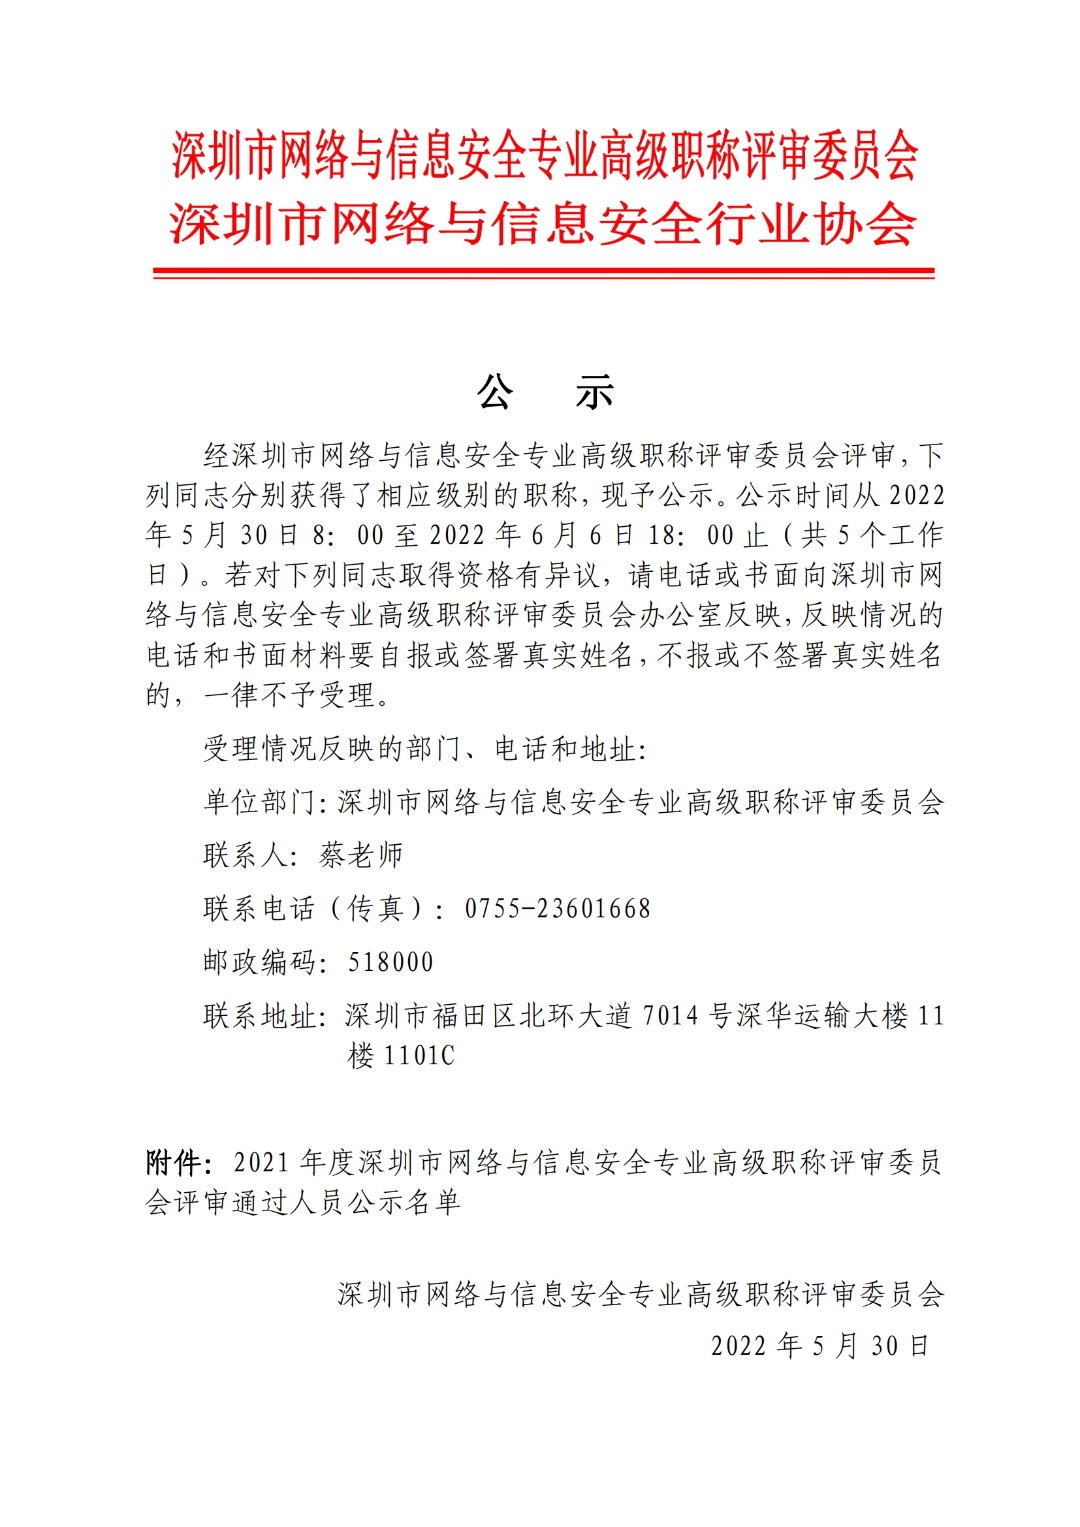 2021年度深圳市网络与信息安全专业高级职称评审委员会评后公示-第1张图片-网盾网络安全培训